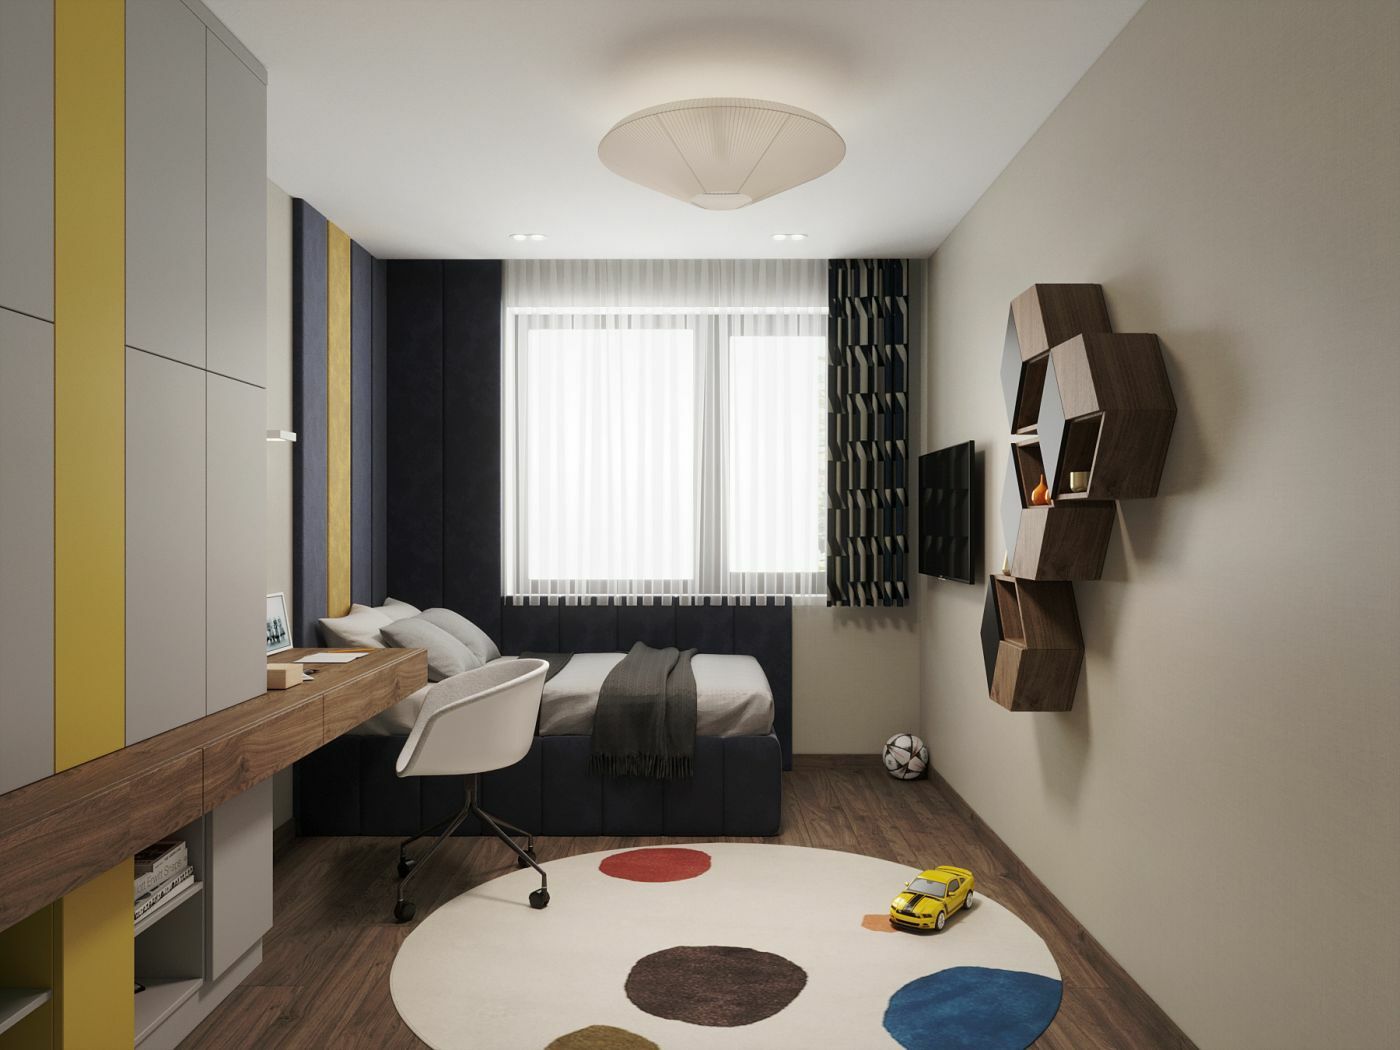 Hatszögletű falipolcok teszik modernné a szobát